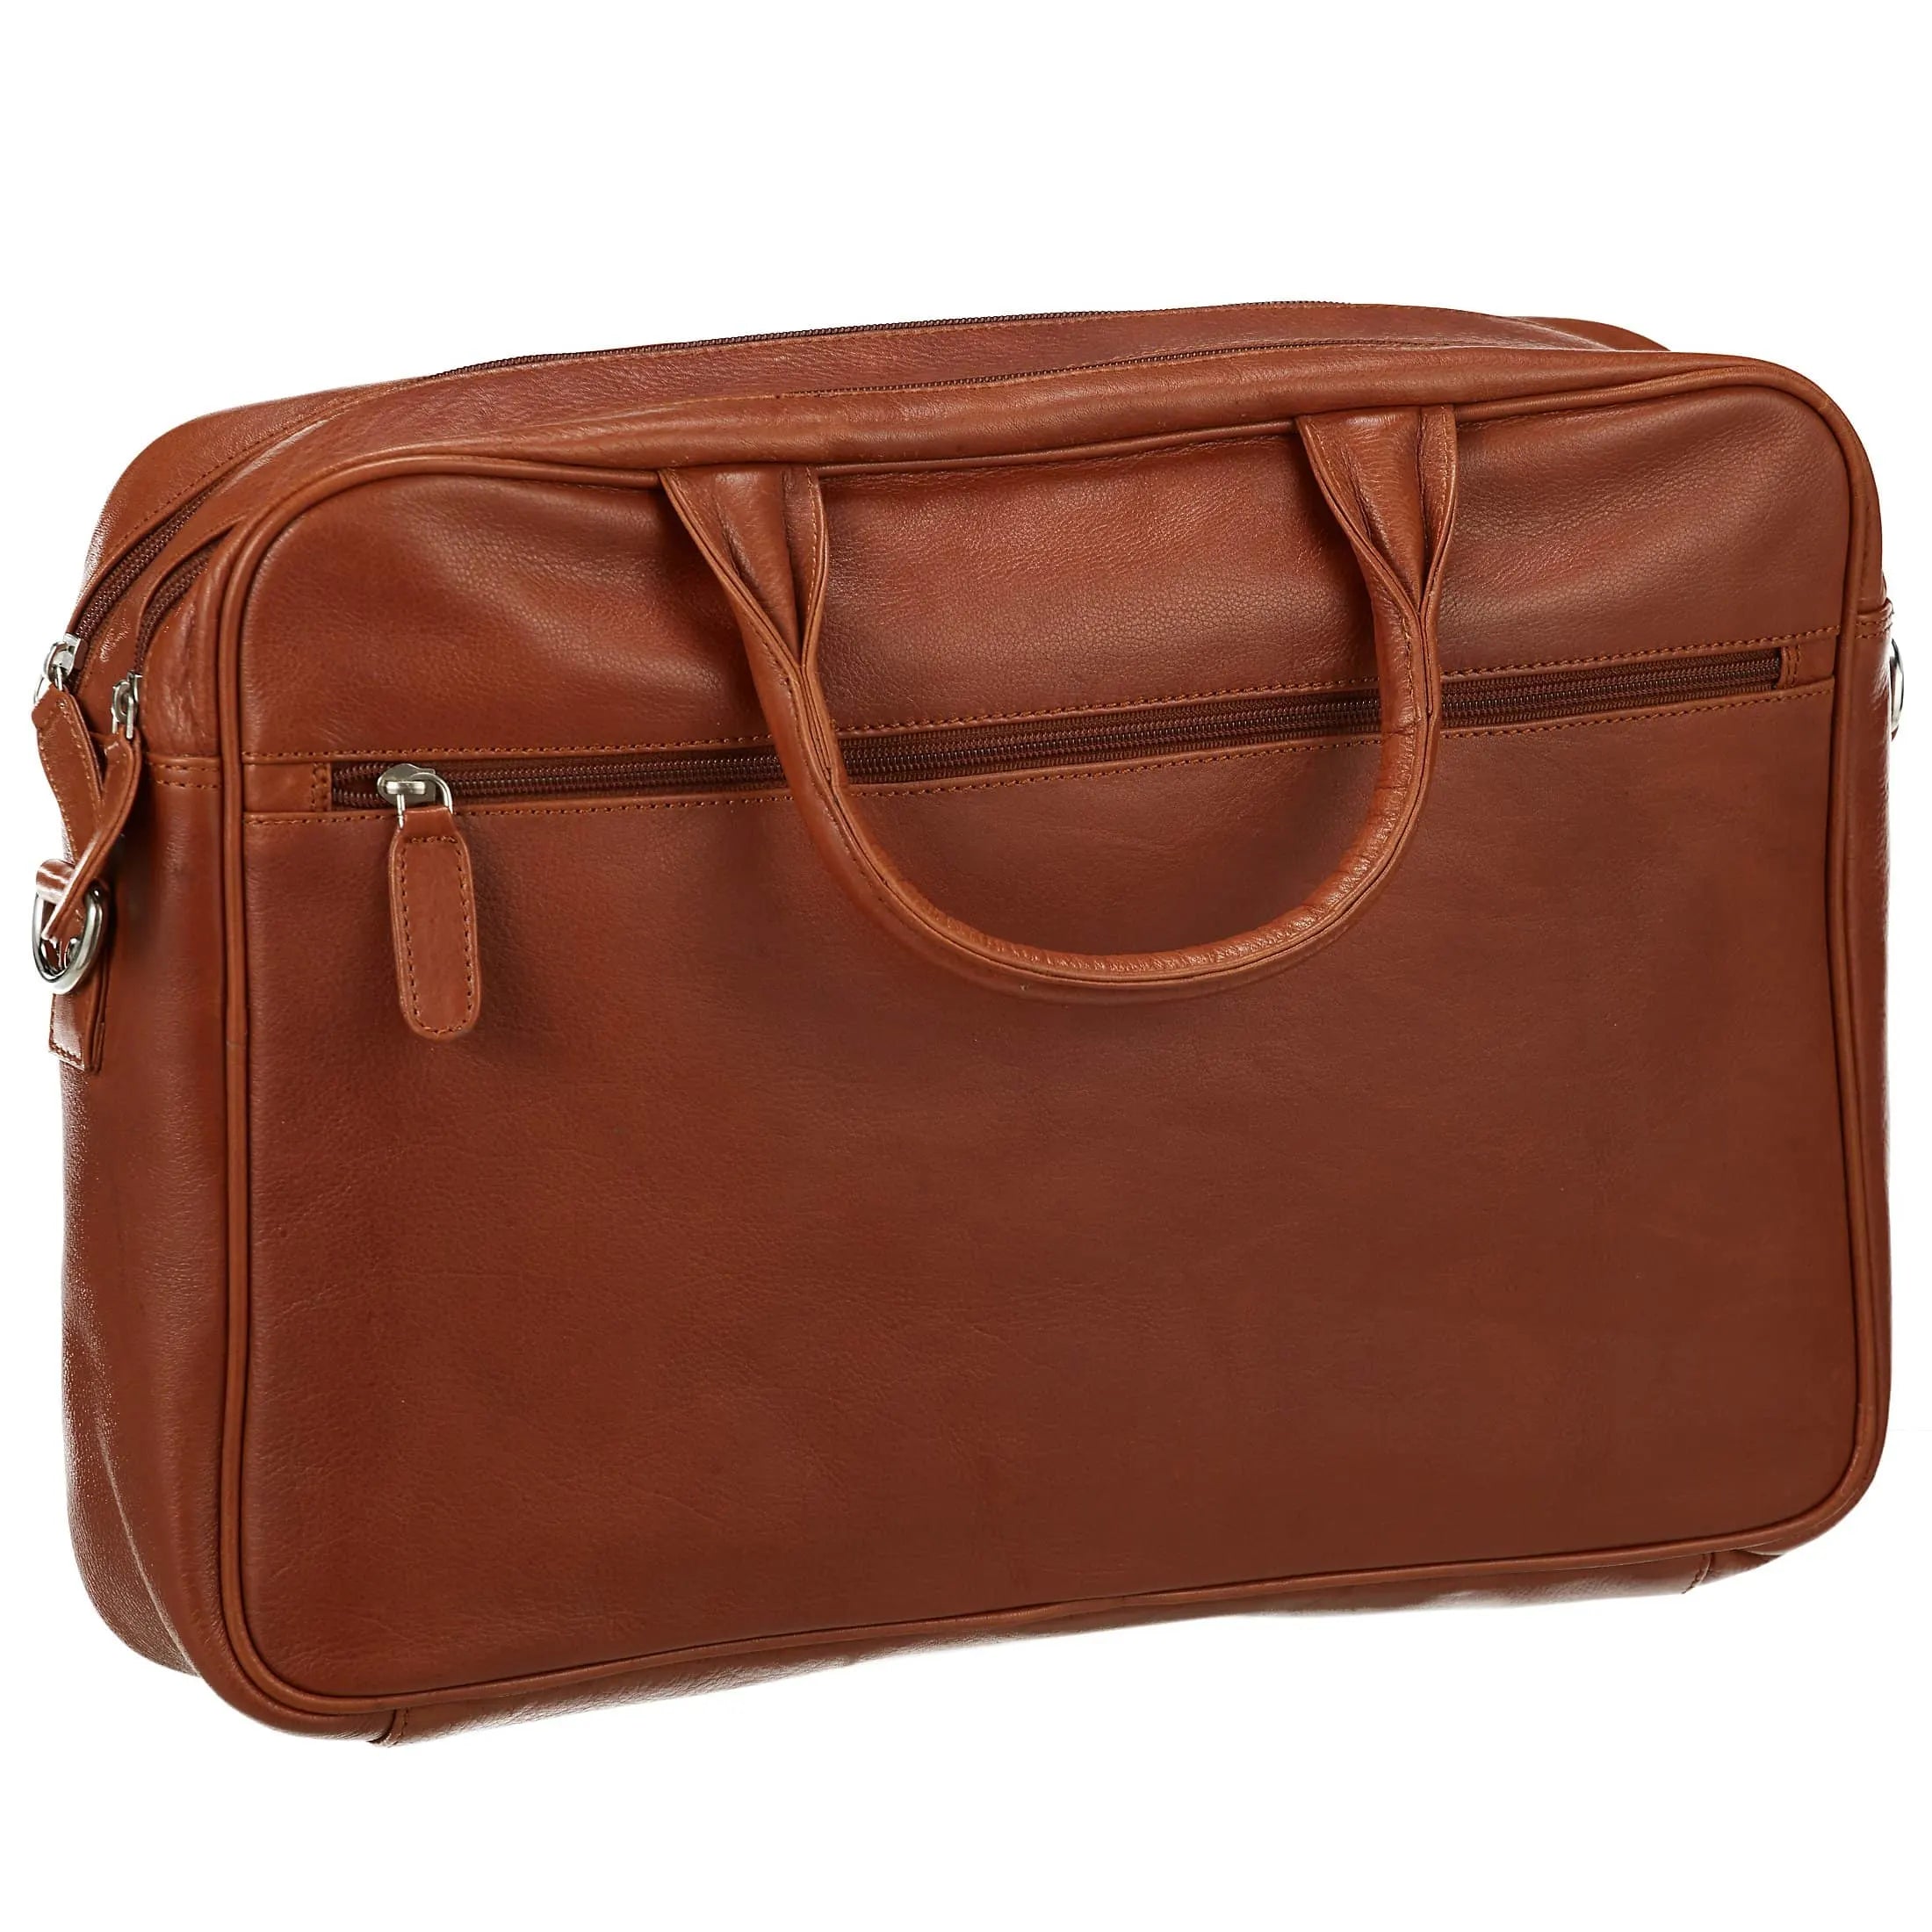 Dermata Business briefcase with laptop compartment 41 cm - Cognac